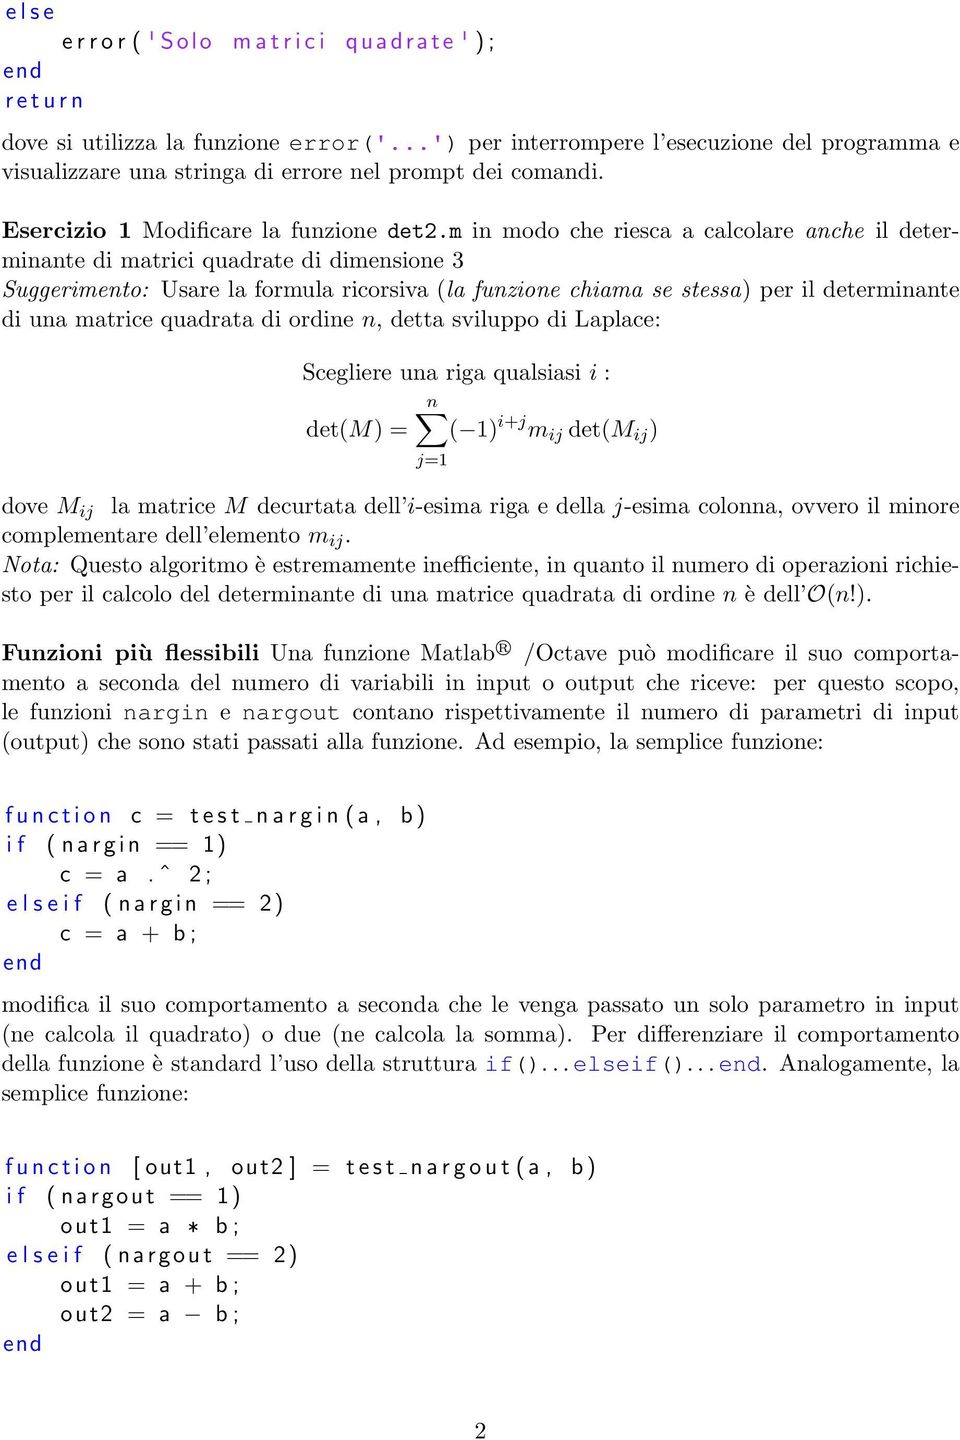 m in modo che riesca a calcolare anche il determinante di matrici quadrate di dimensione 3 Suggerimento: Usare la formula ricorsiva (la funzione chiama se stessa) per il determinante di una matrice